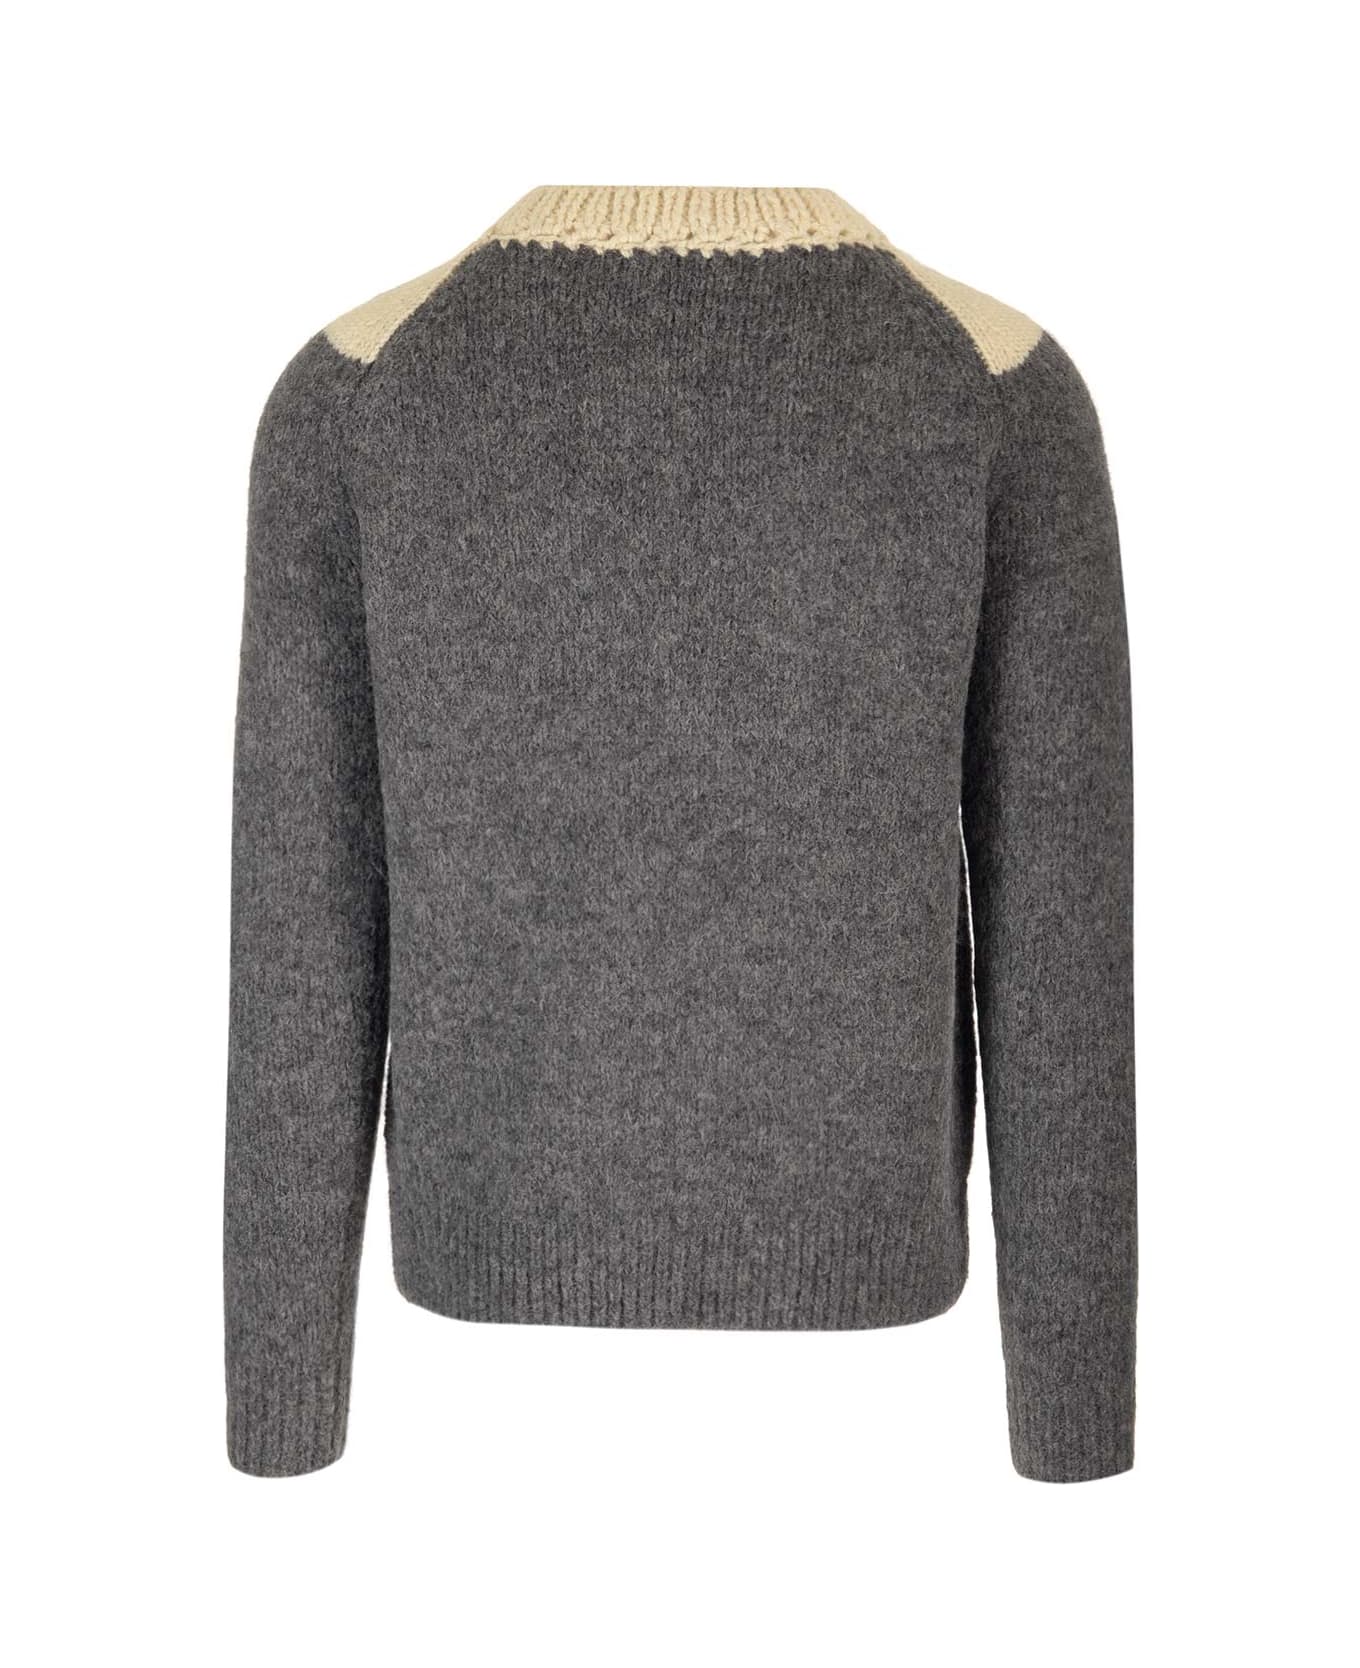 Dries Van Noten 'morgan' Crewneck Sweater - Grey ニットウェア